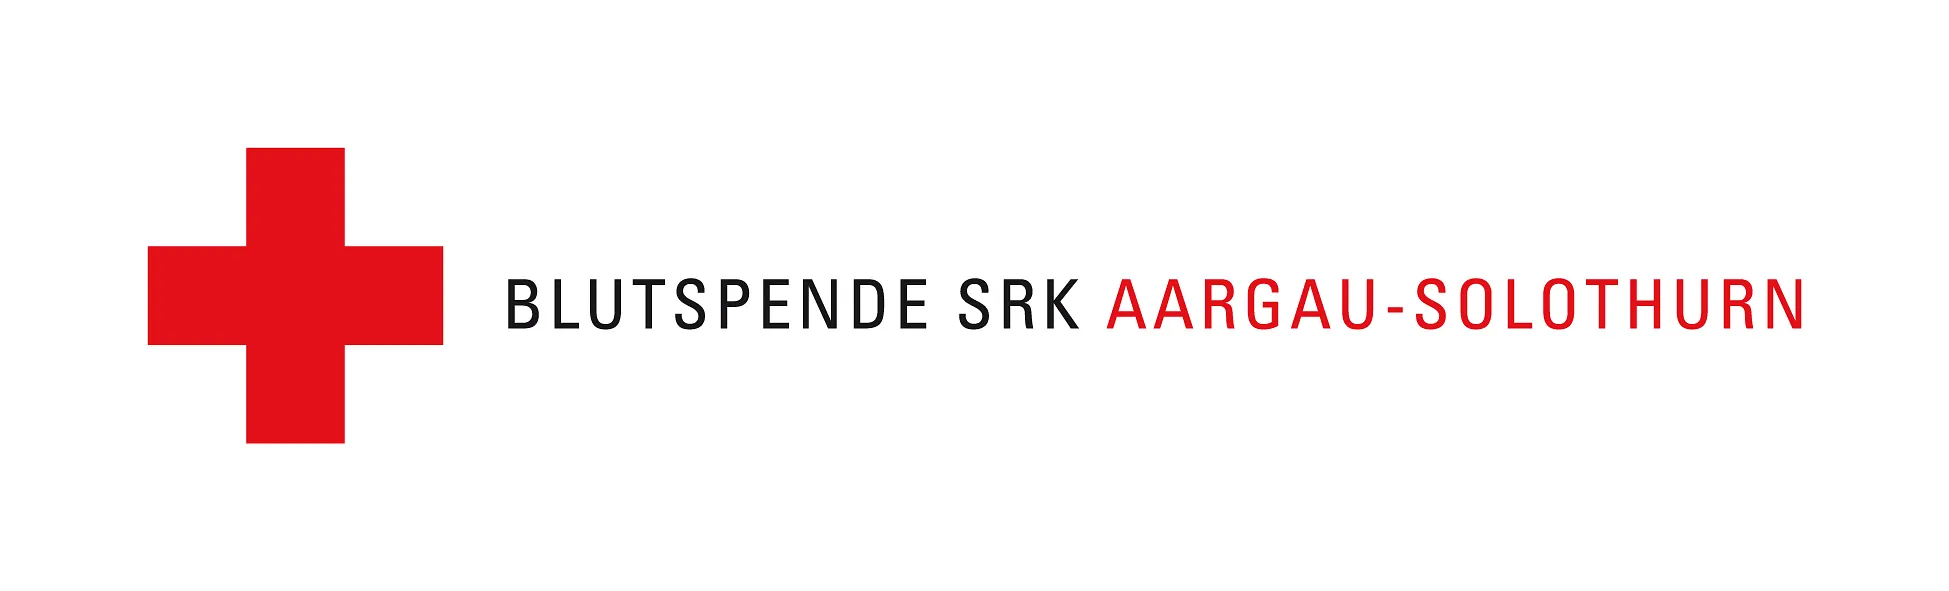 Stiftung Blutspende SRK Aargau-Solothurn